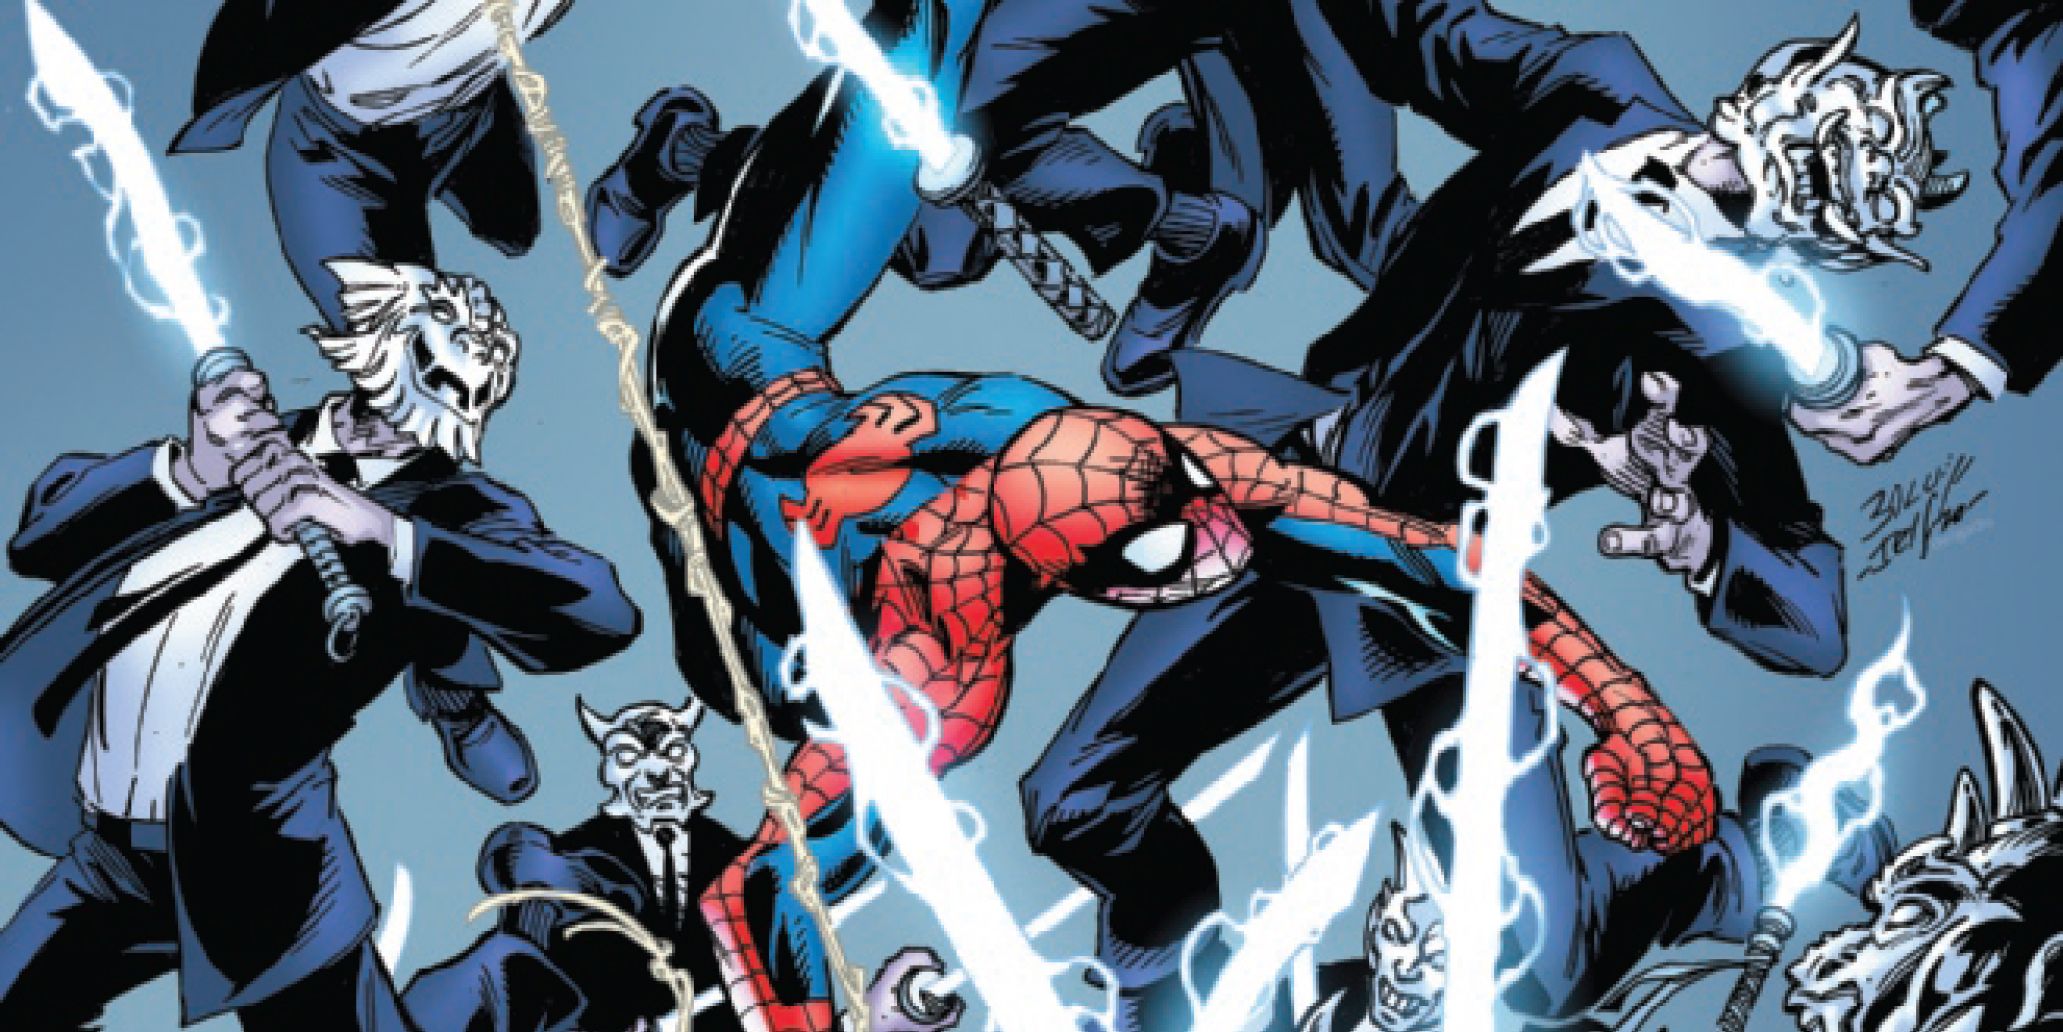 EXCLUSIVO: Spiderman se lanza con los demonios de un villano